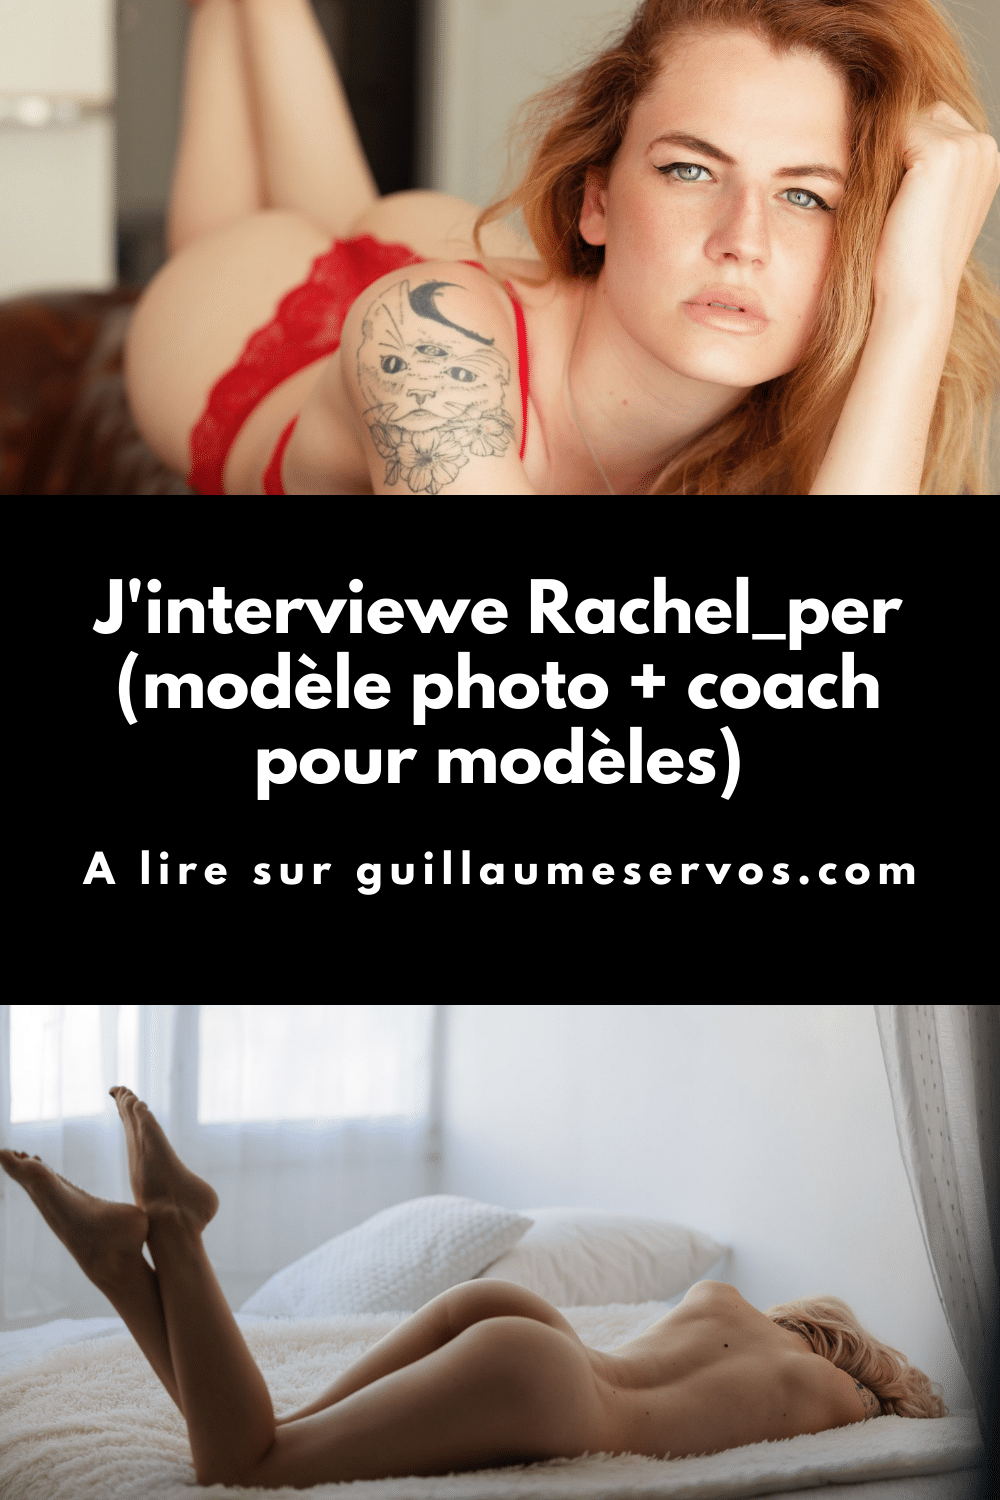 Découvre mon interview avec Rachel_per, modèle photo et coach pour modèles. Son rapport à la photographie, aux réseaux sociaux et au voyage.